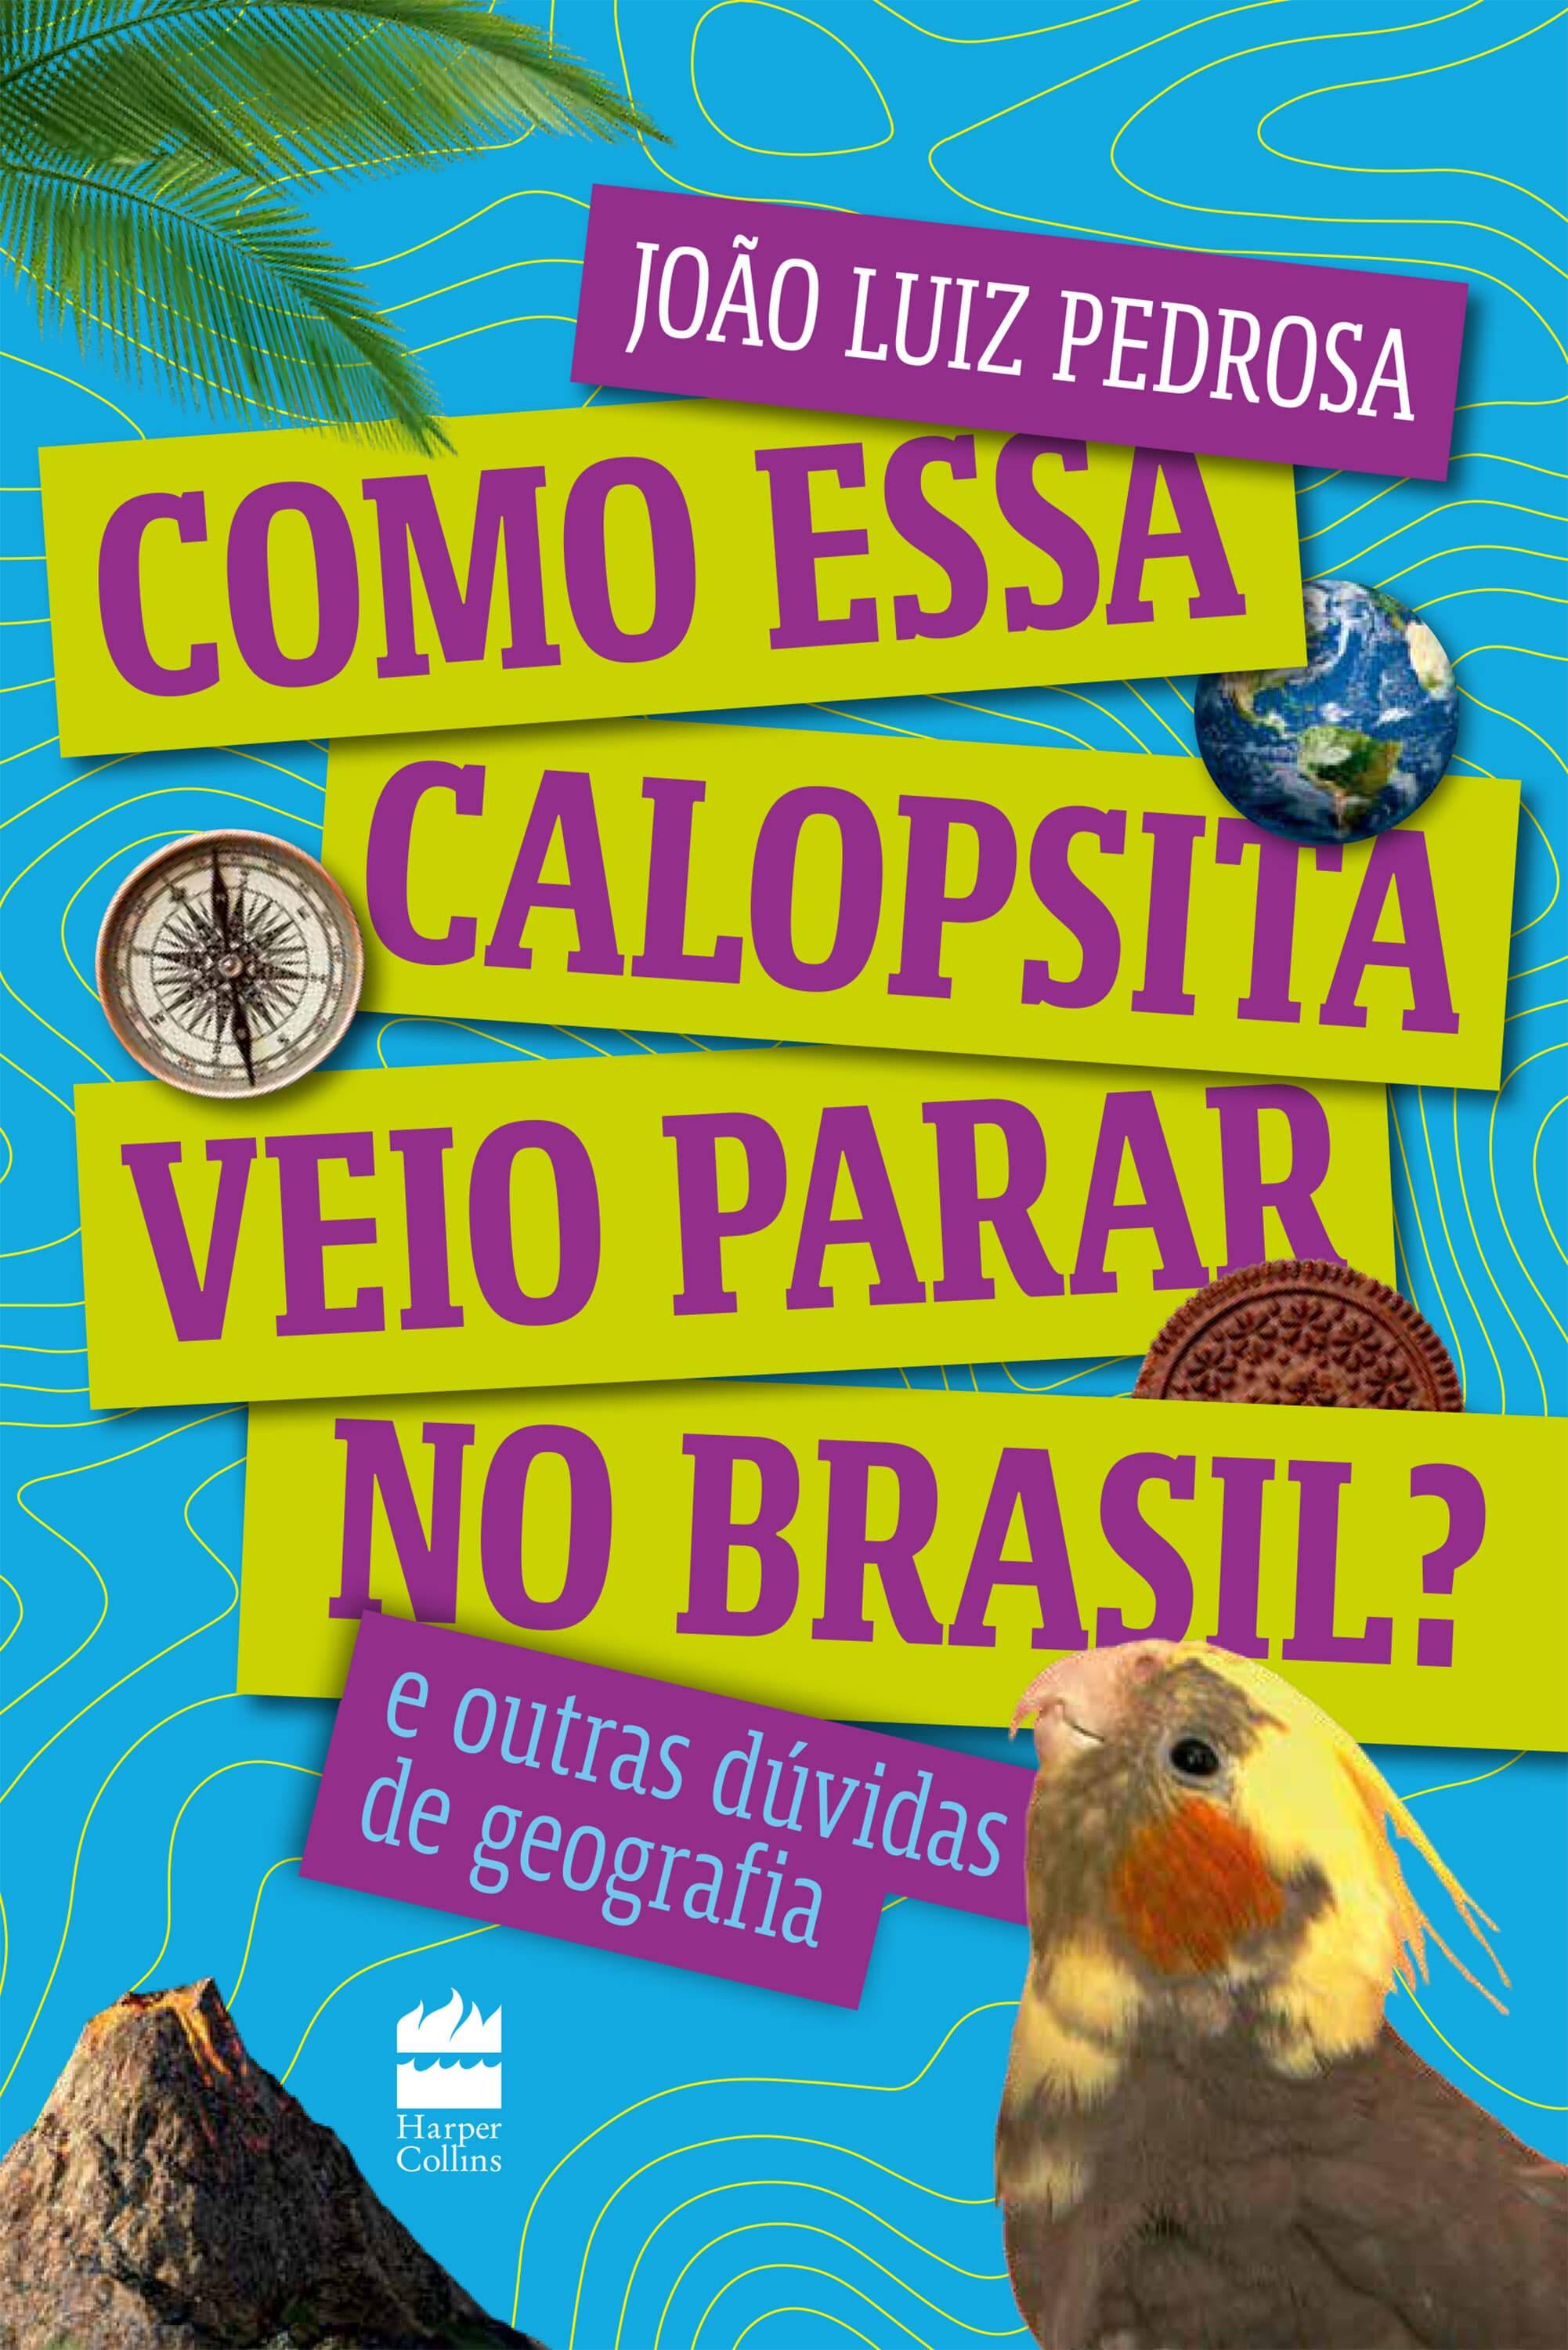 "Como Essa Calopsita Veio Parar no Brasil?", primeiro livro de João Luiz, está em pré-venda. Foto: Divulgação